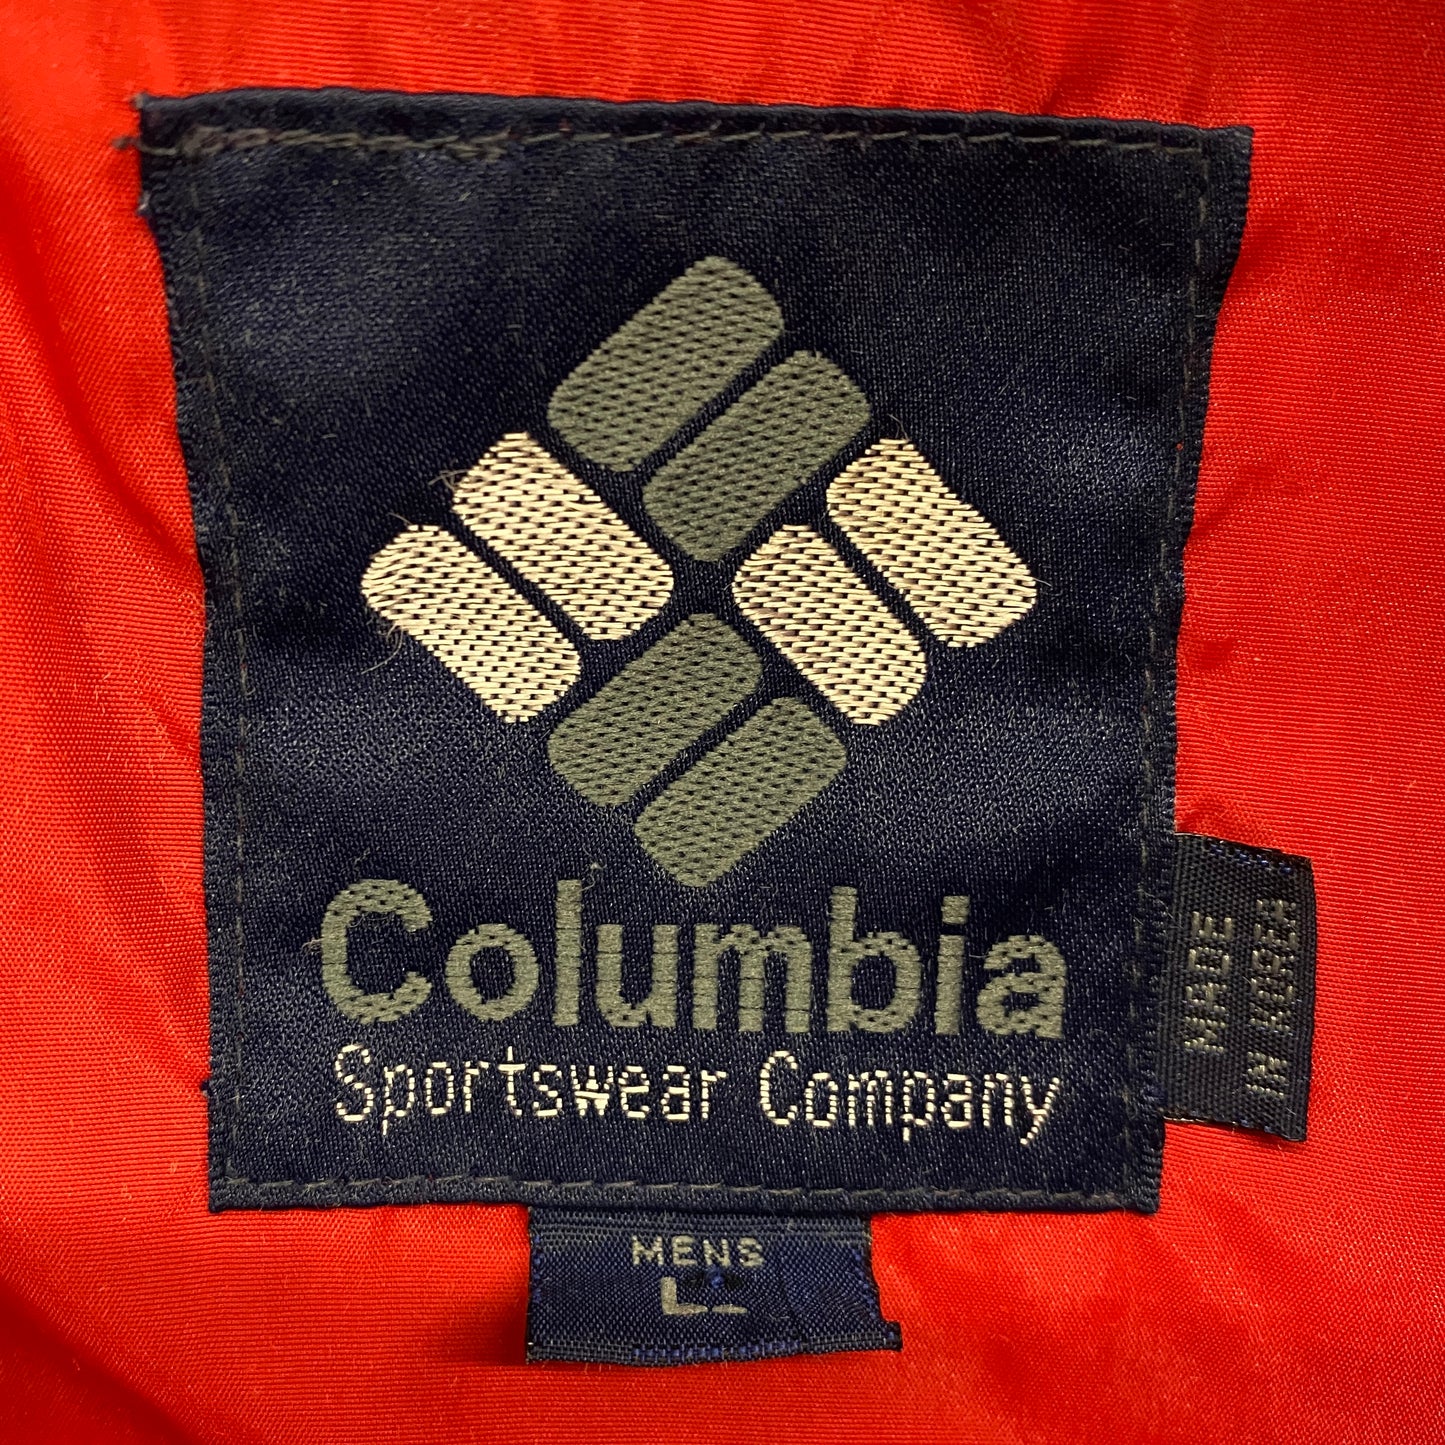 Early 1990s Columbia Sportswear Anorak Windbreaker - Size Large